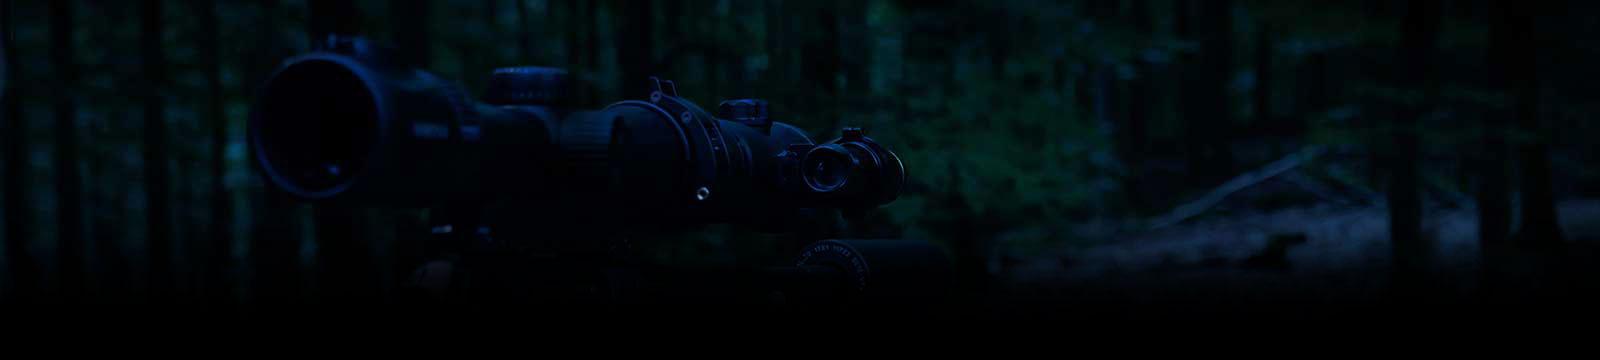 Jagd bei Nacht